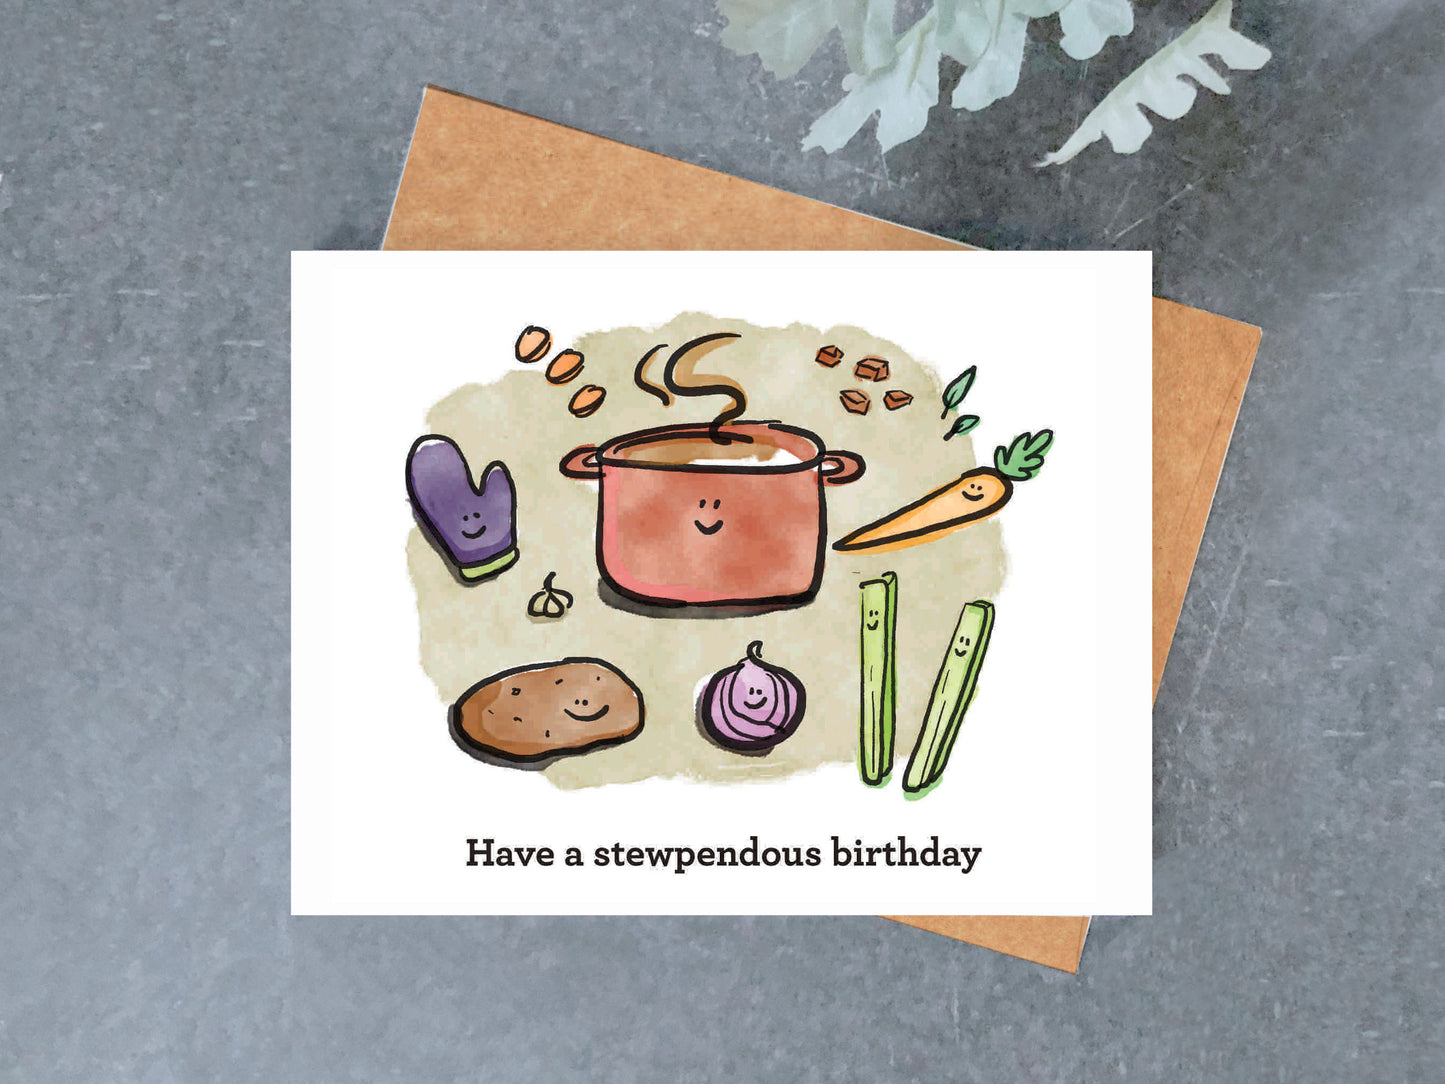 Stew-pendous Birthday